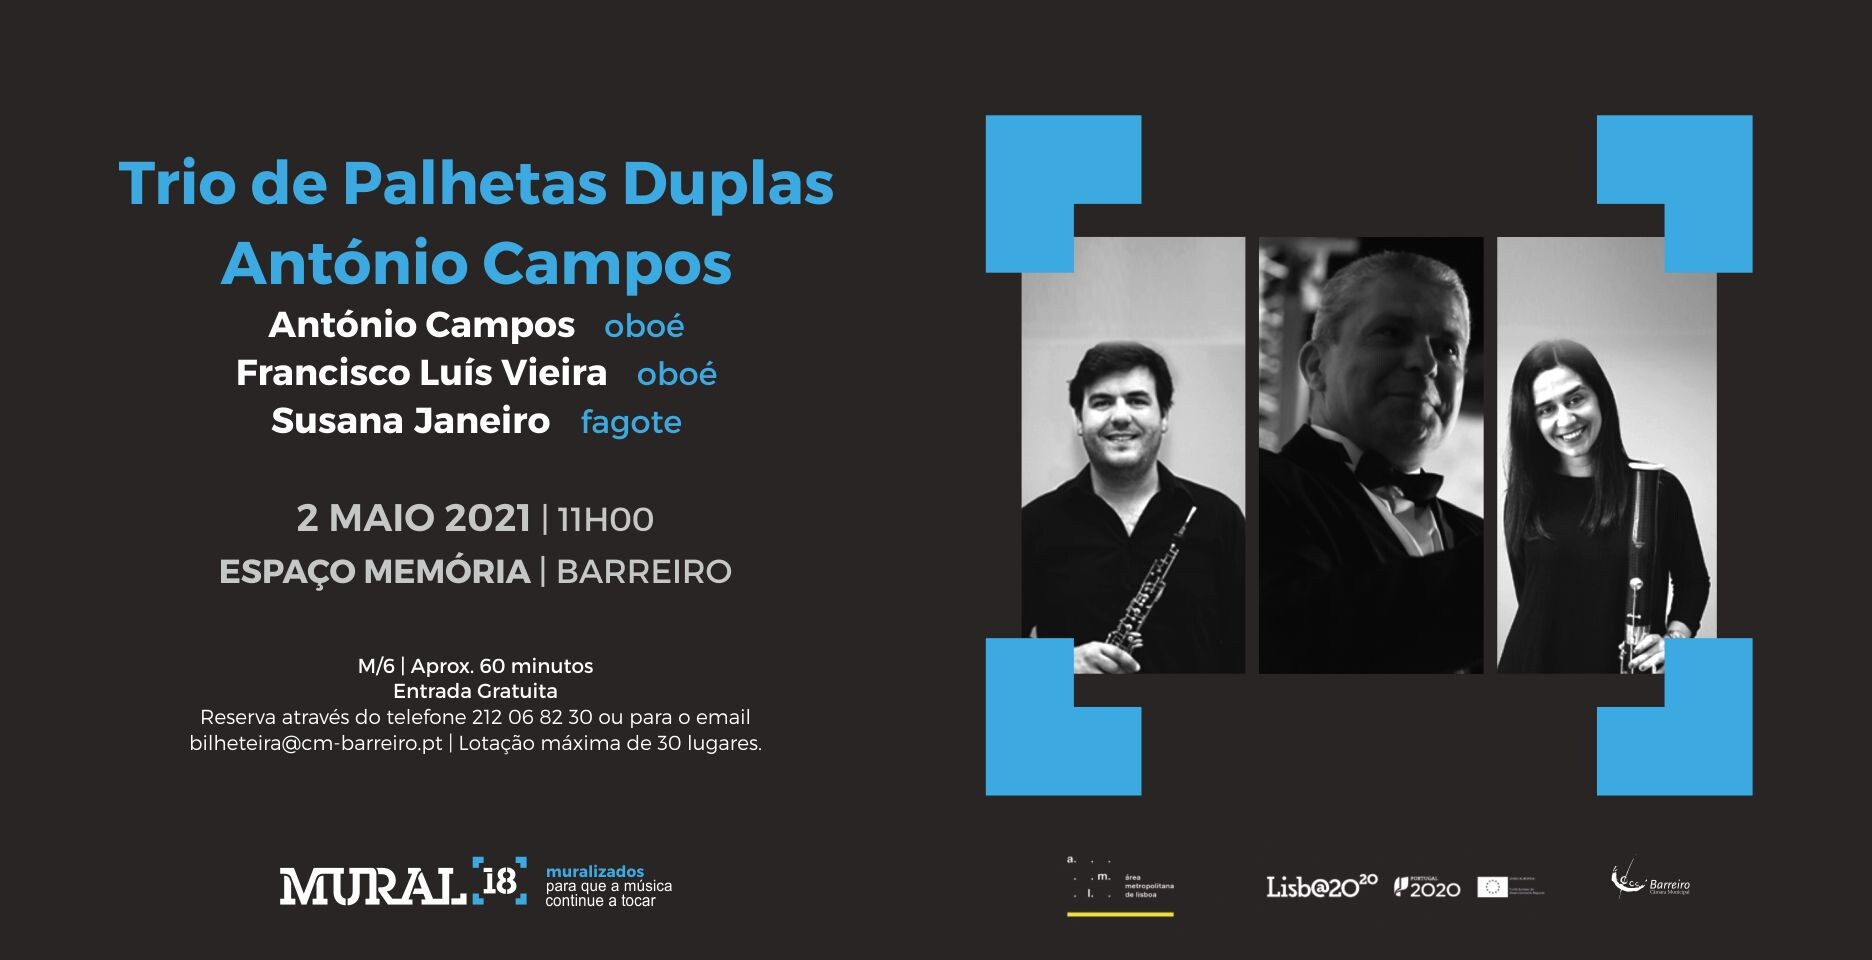 Trio de palhetas duplas António Campos | Concerto Programação em Rede MURAL 18